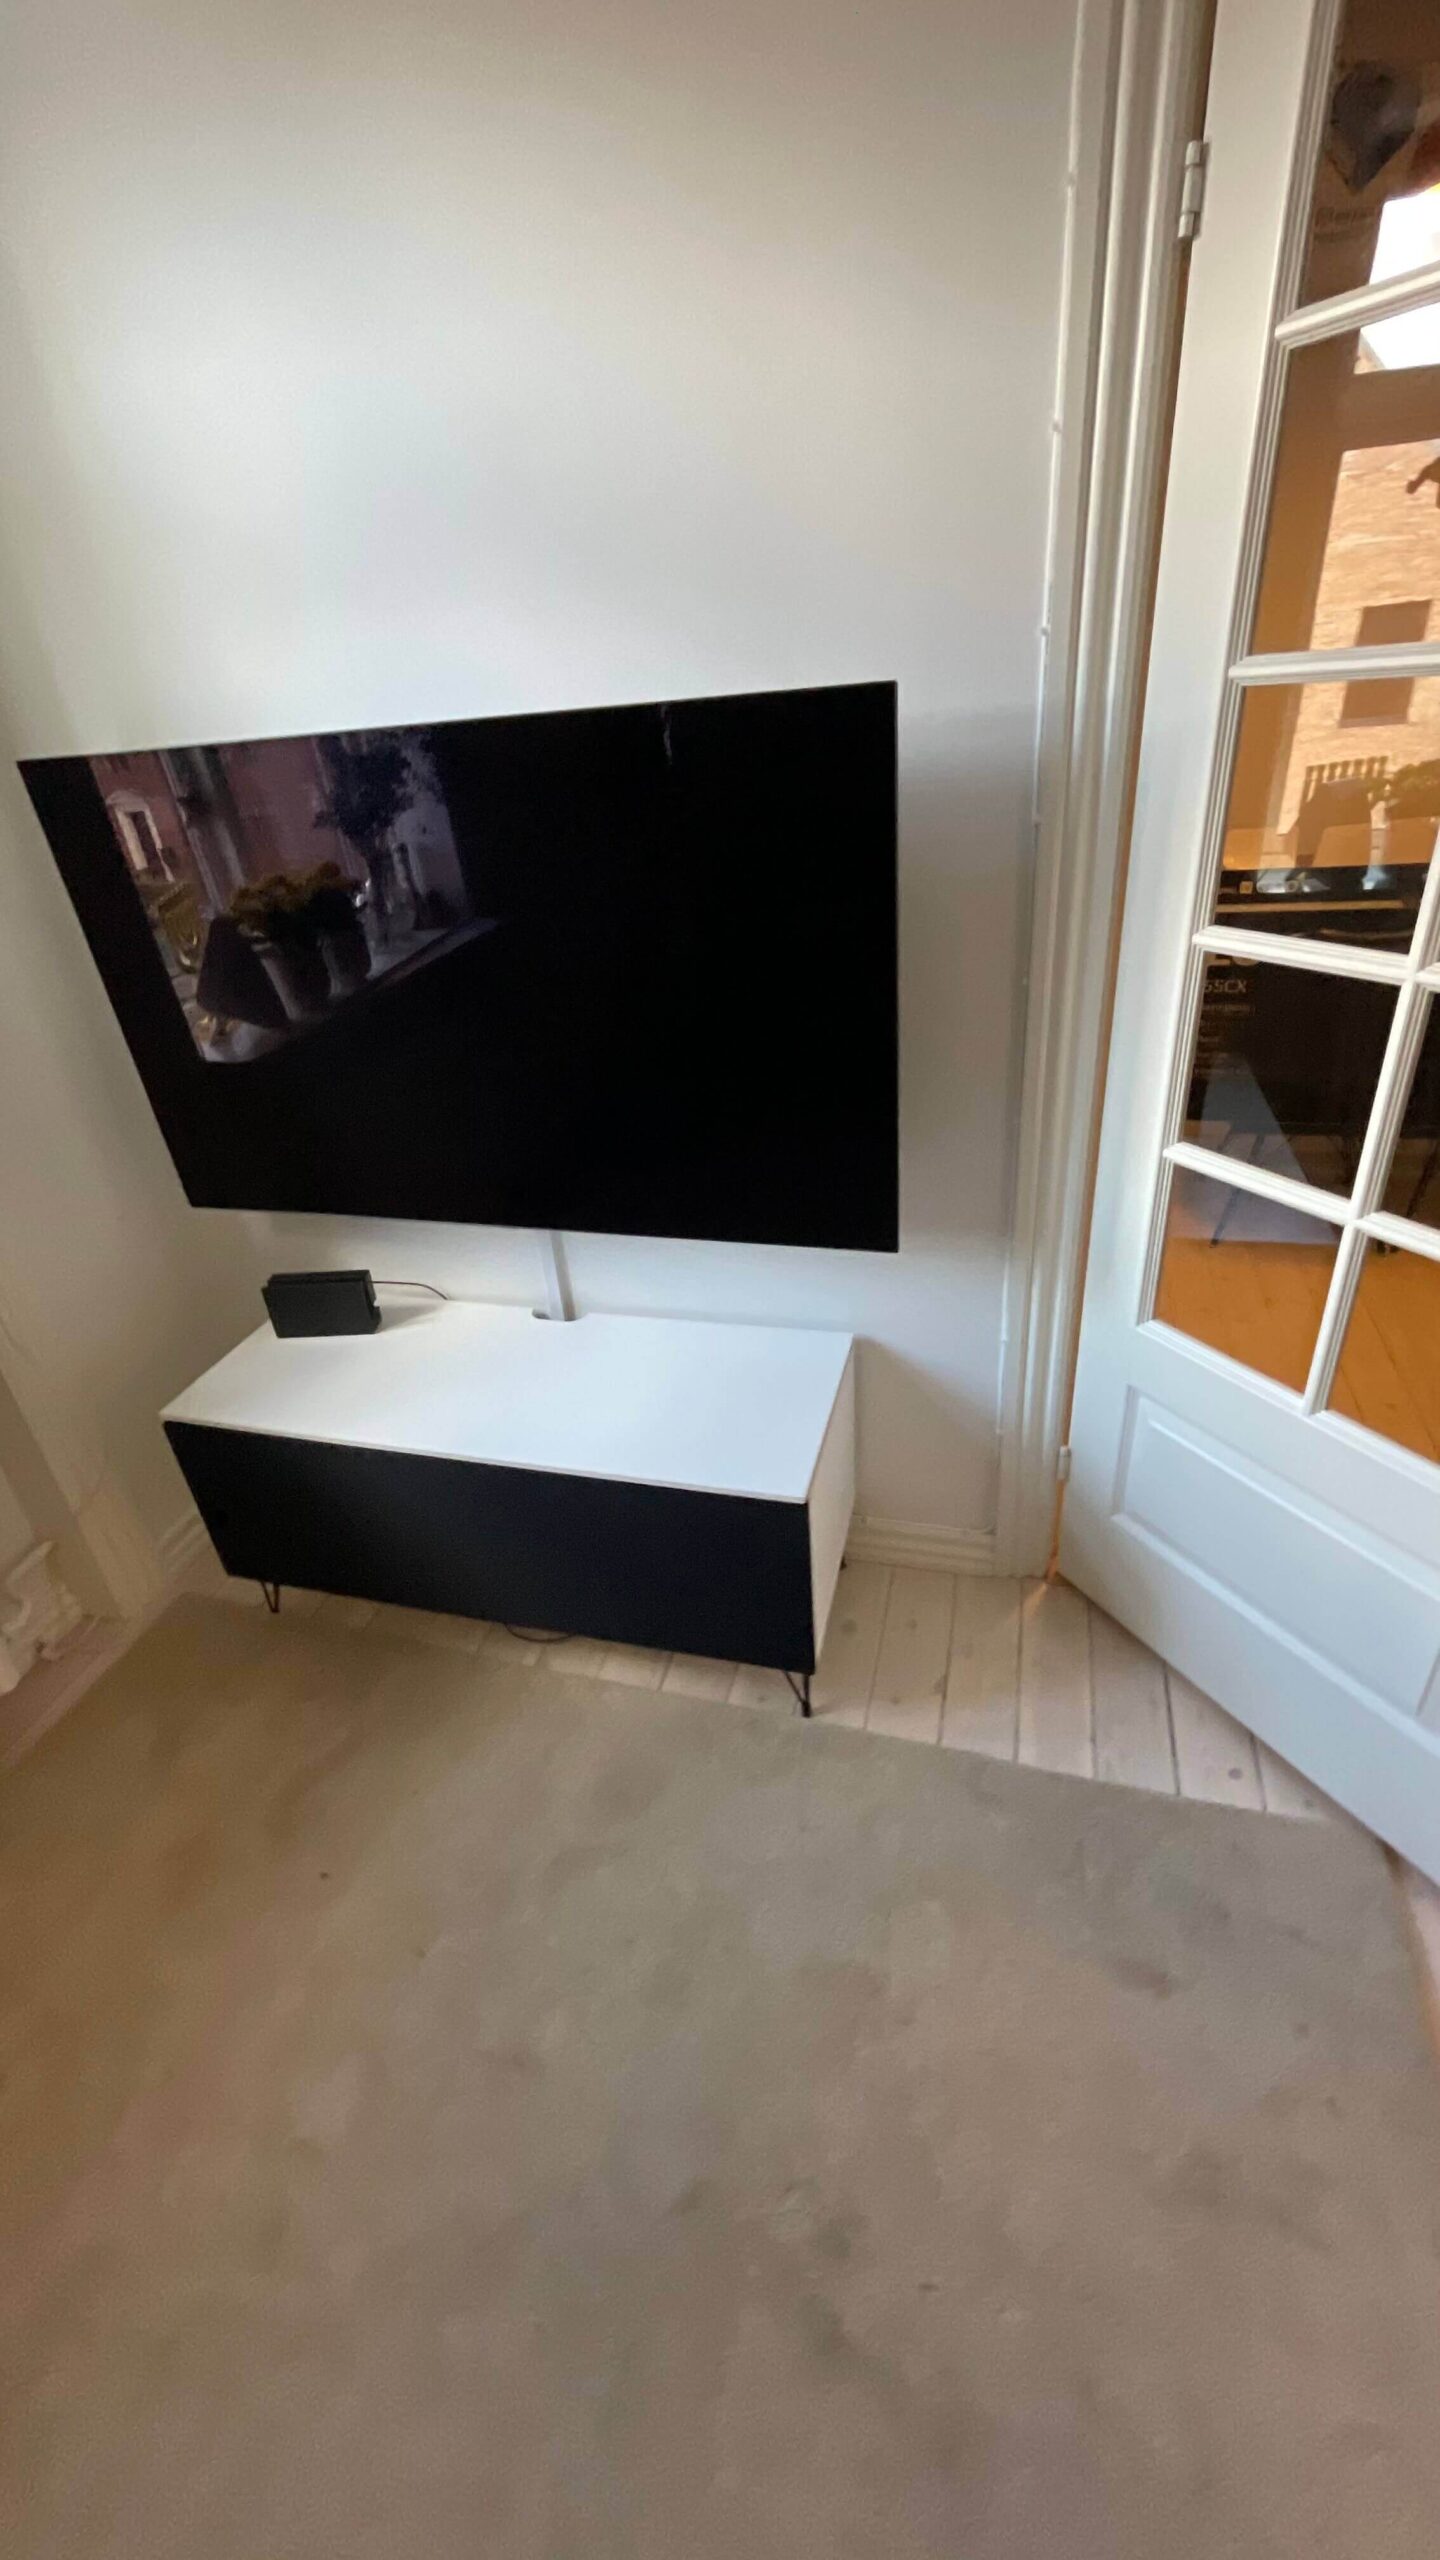 Væg-opsætning af LG OLED TV